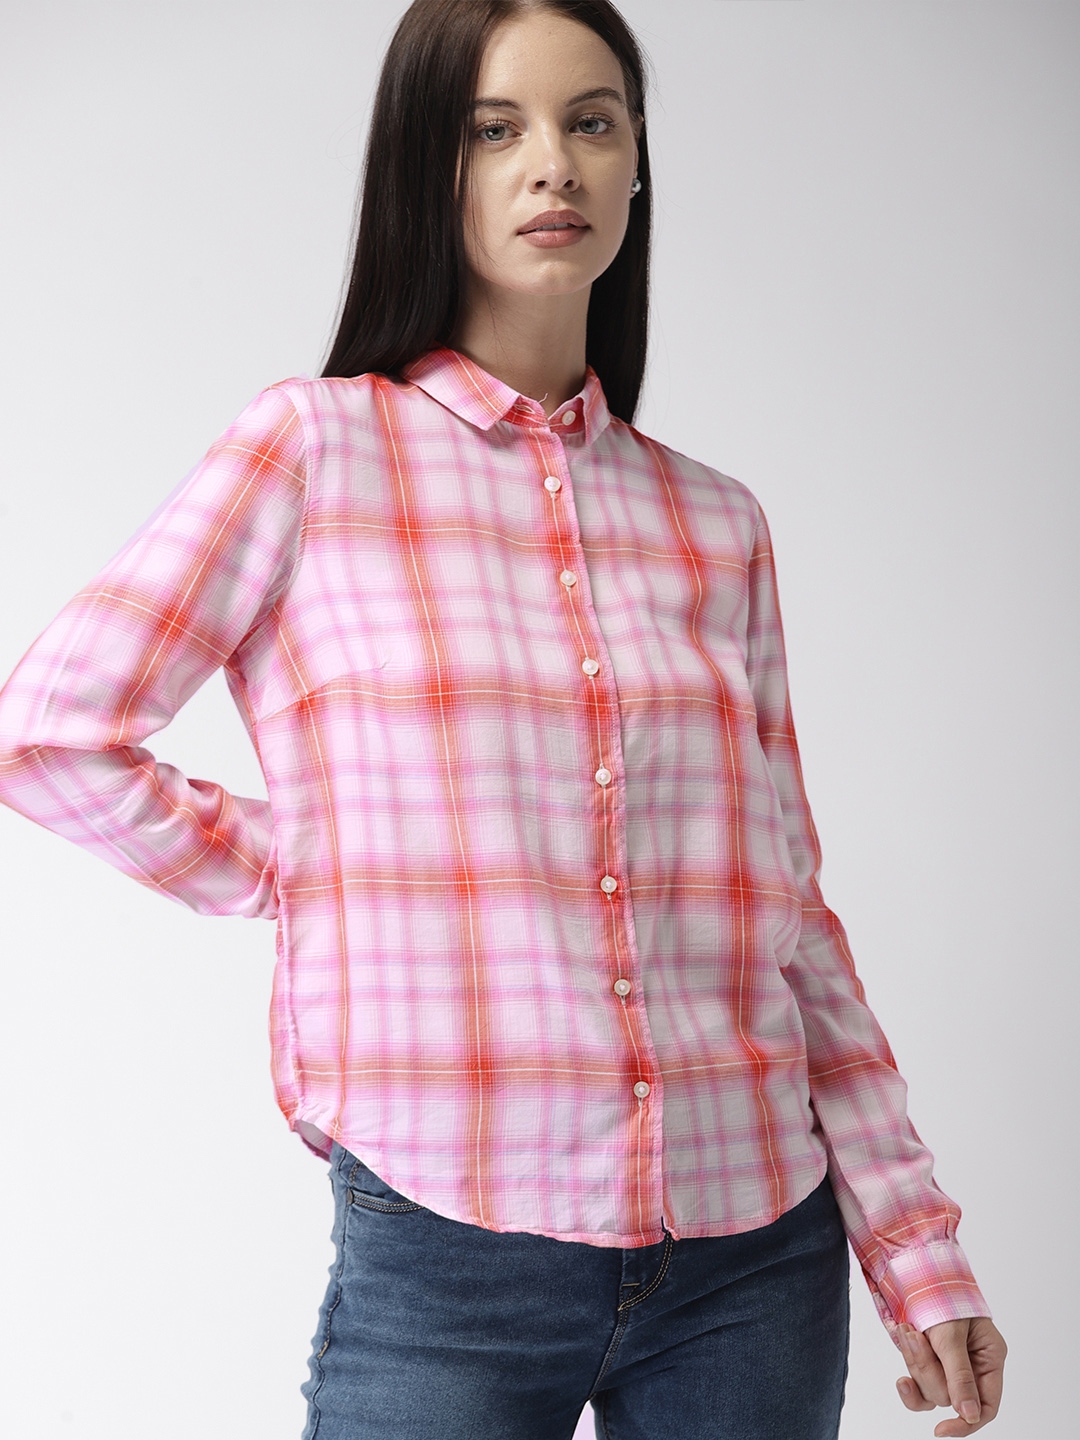 levis pink shirt